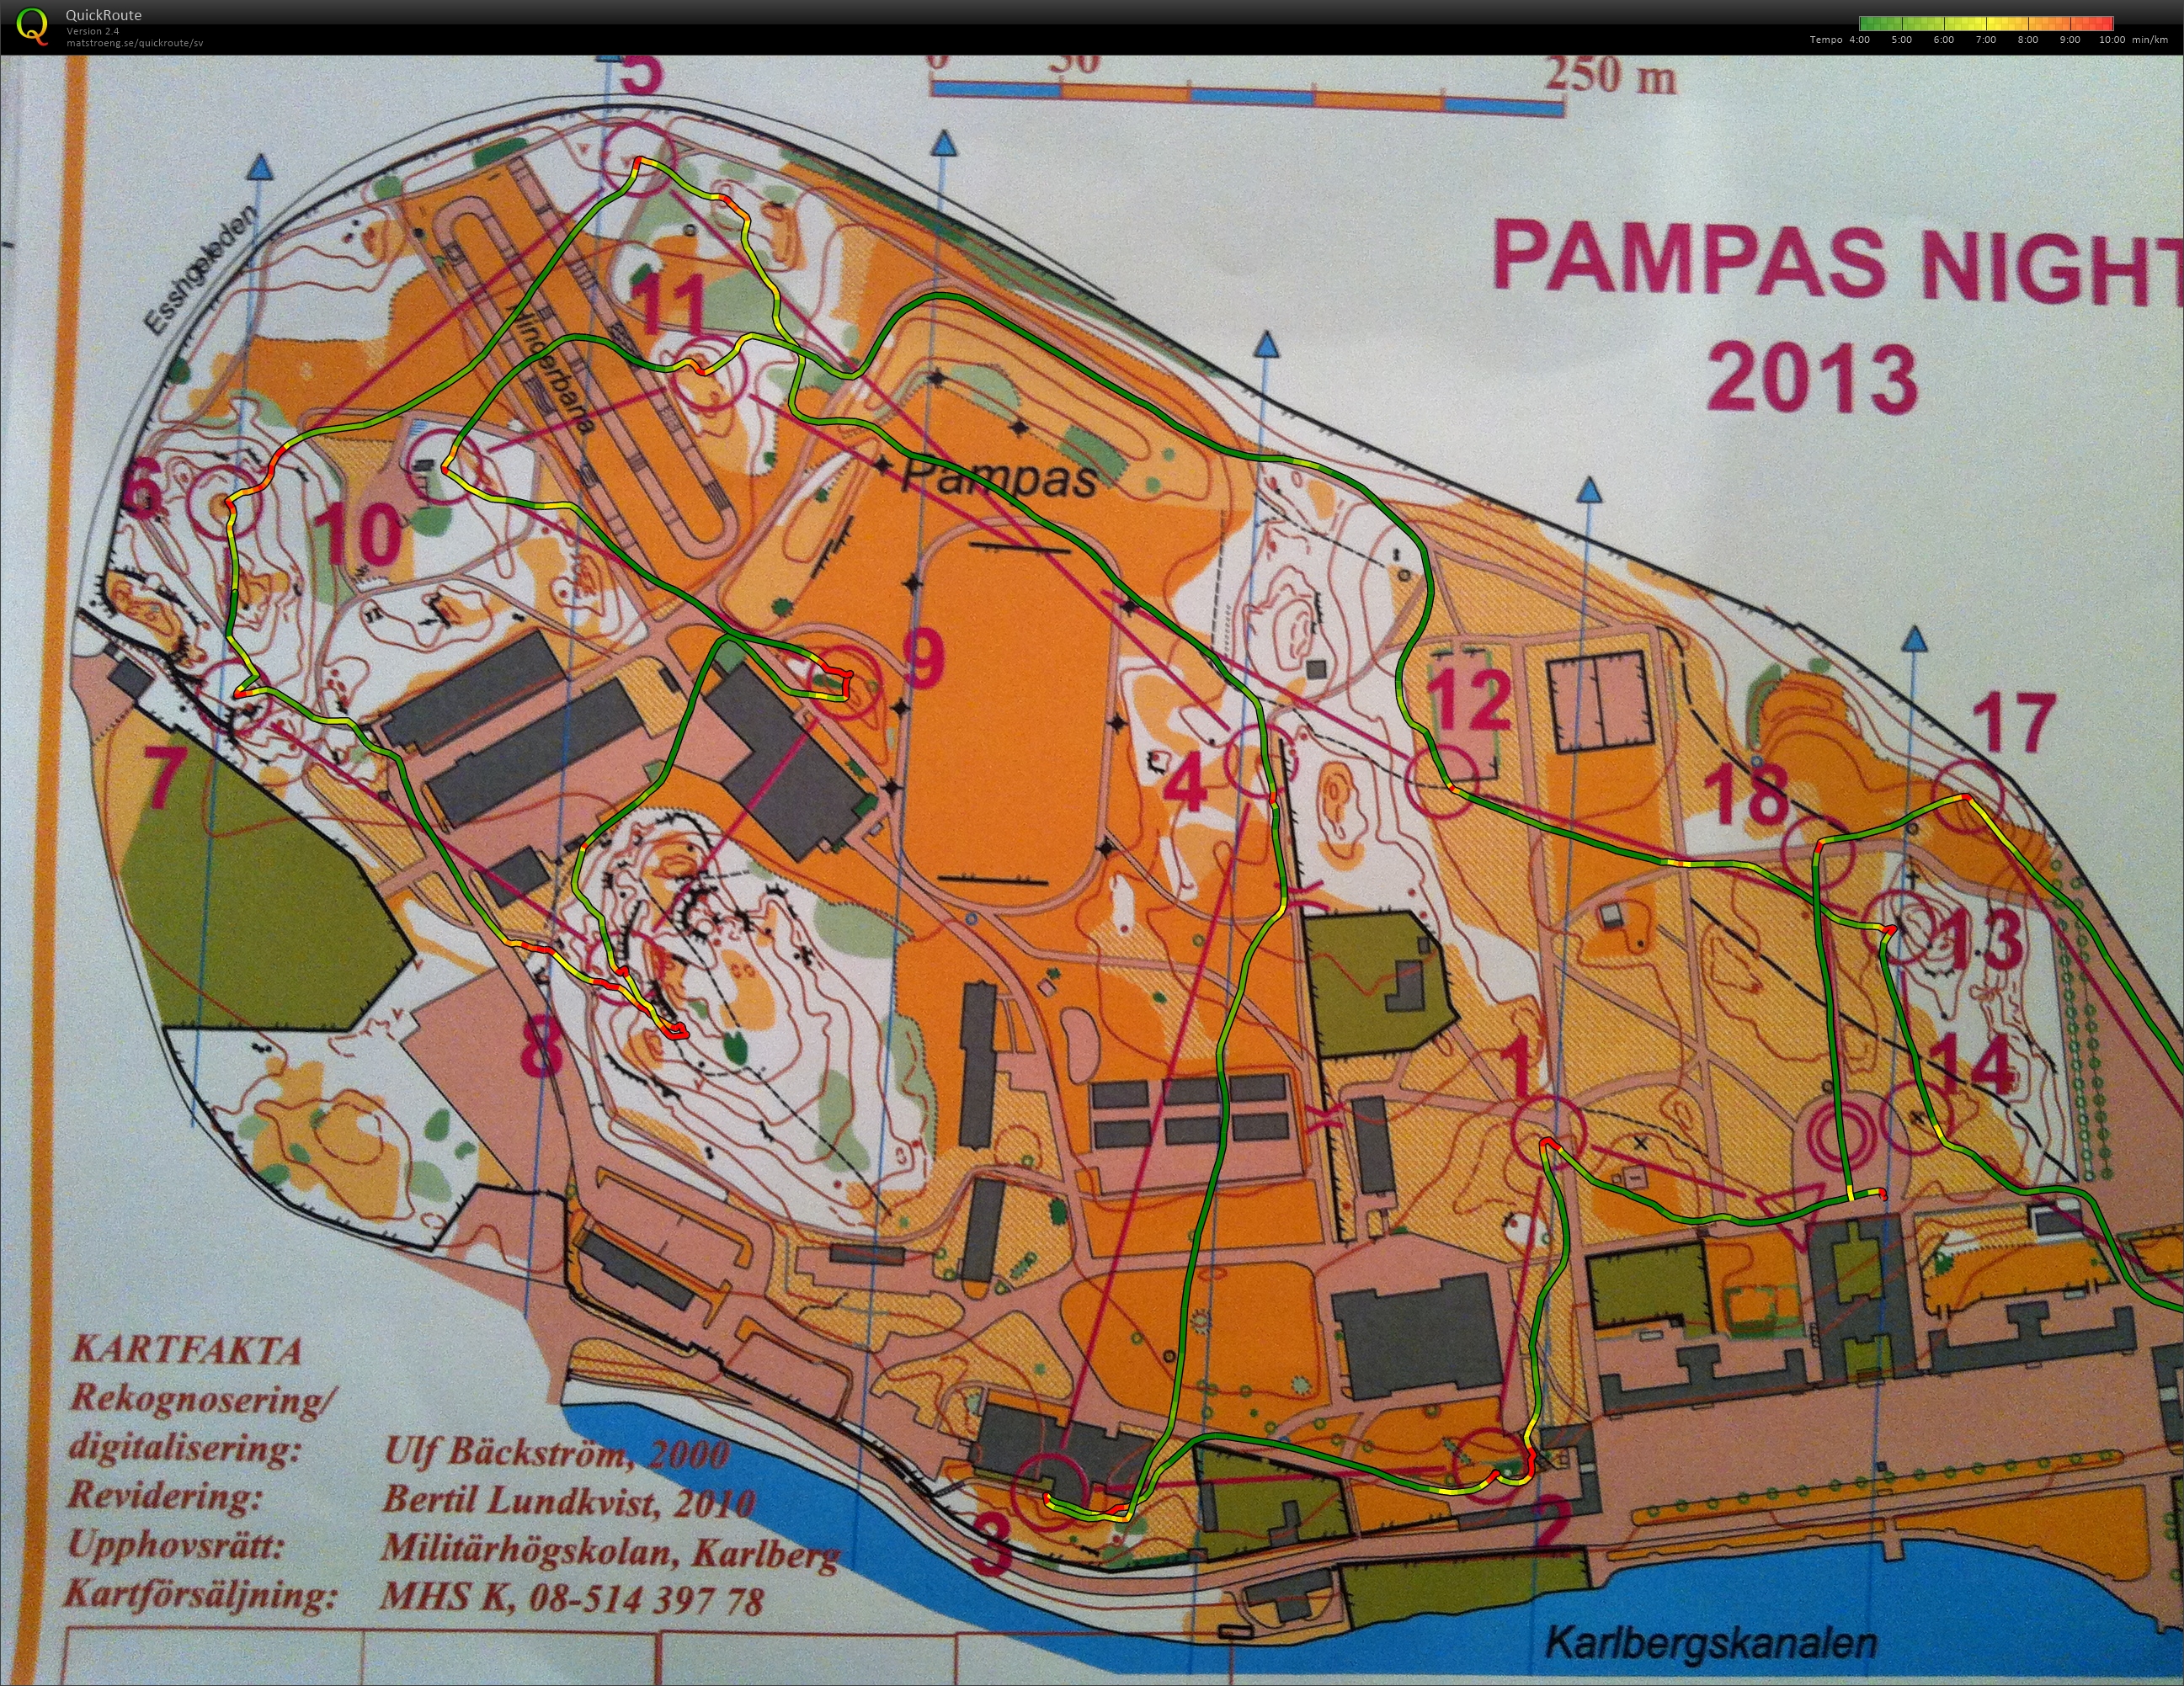 Pampas Night 2013 (2013-10-23) (26-01-2015)